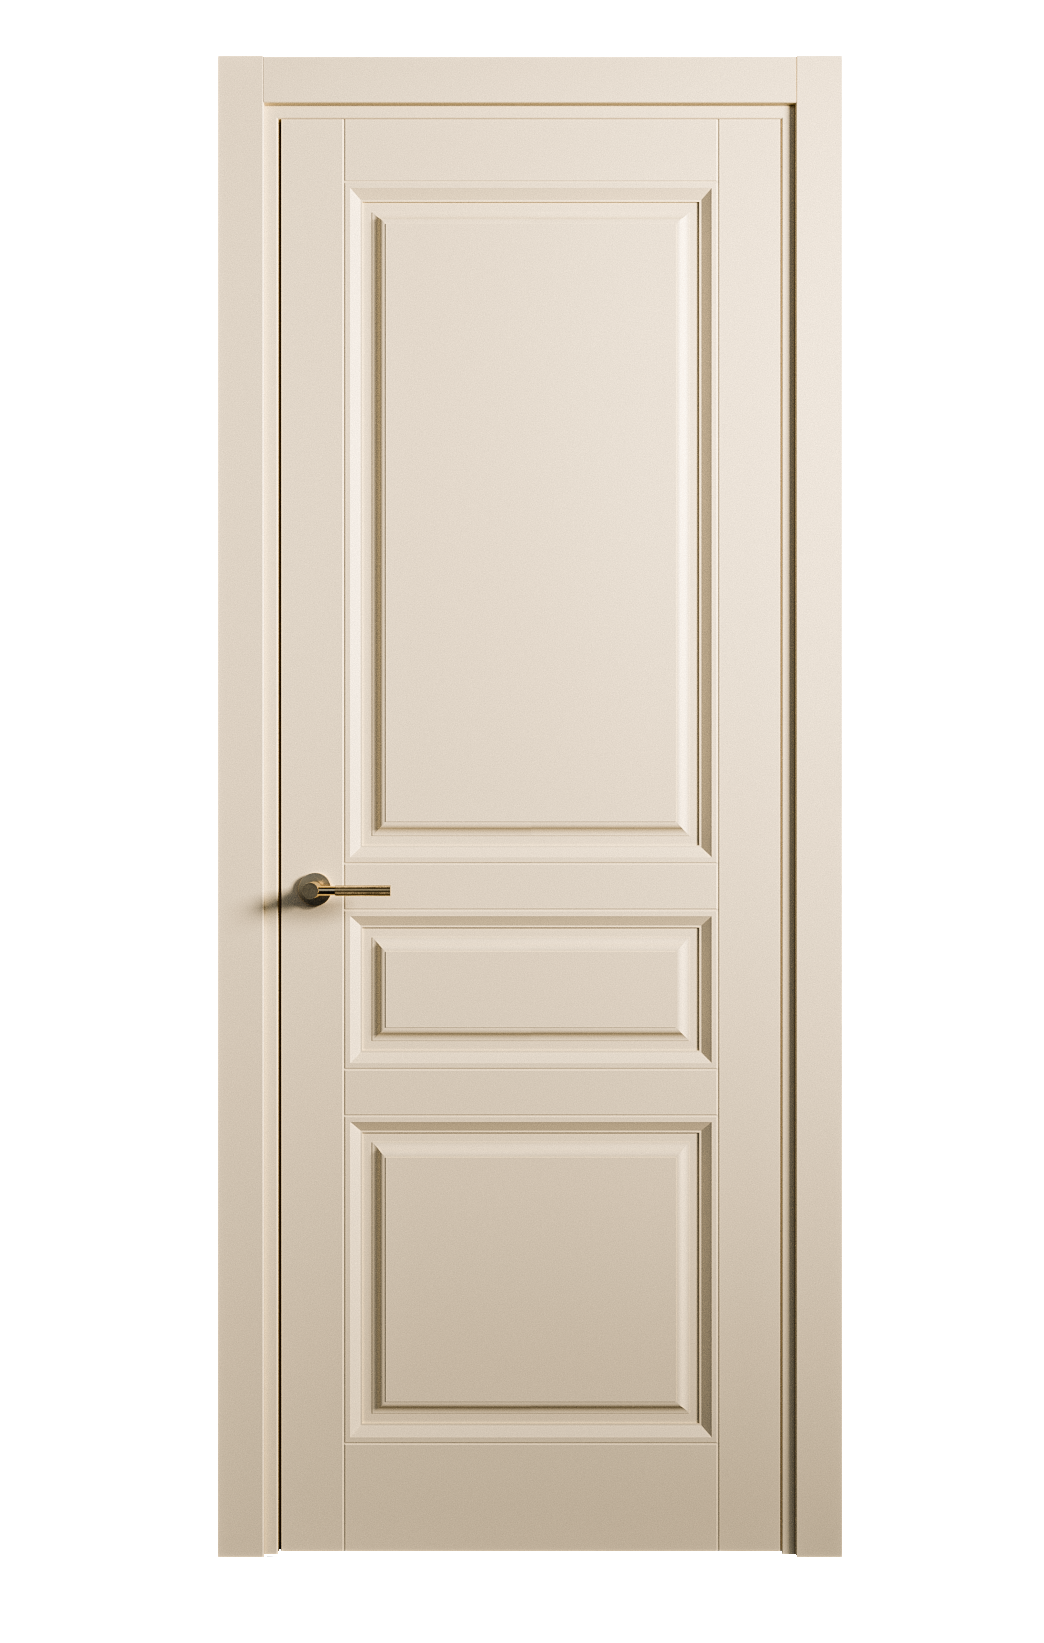 Межкомнатная дверь Venezia-2 глухая эмаль ral 1015 25735